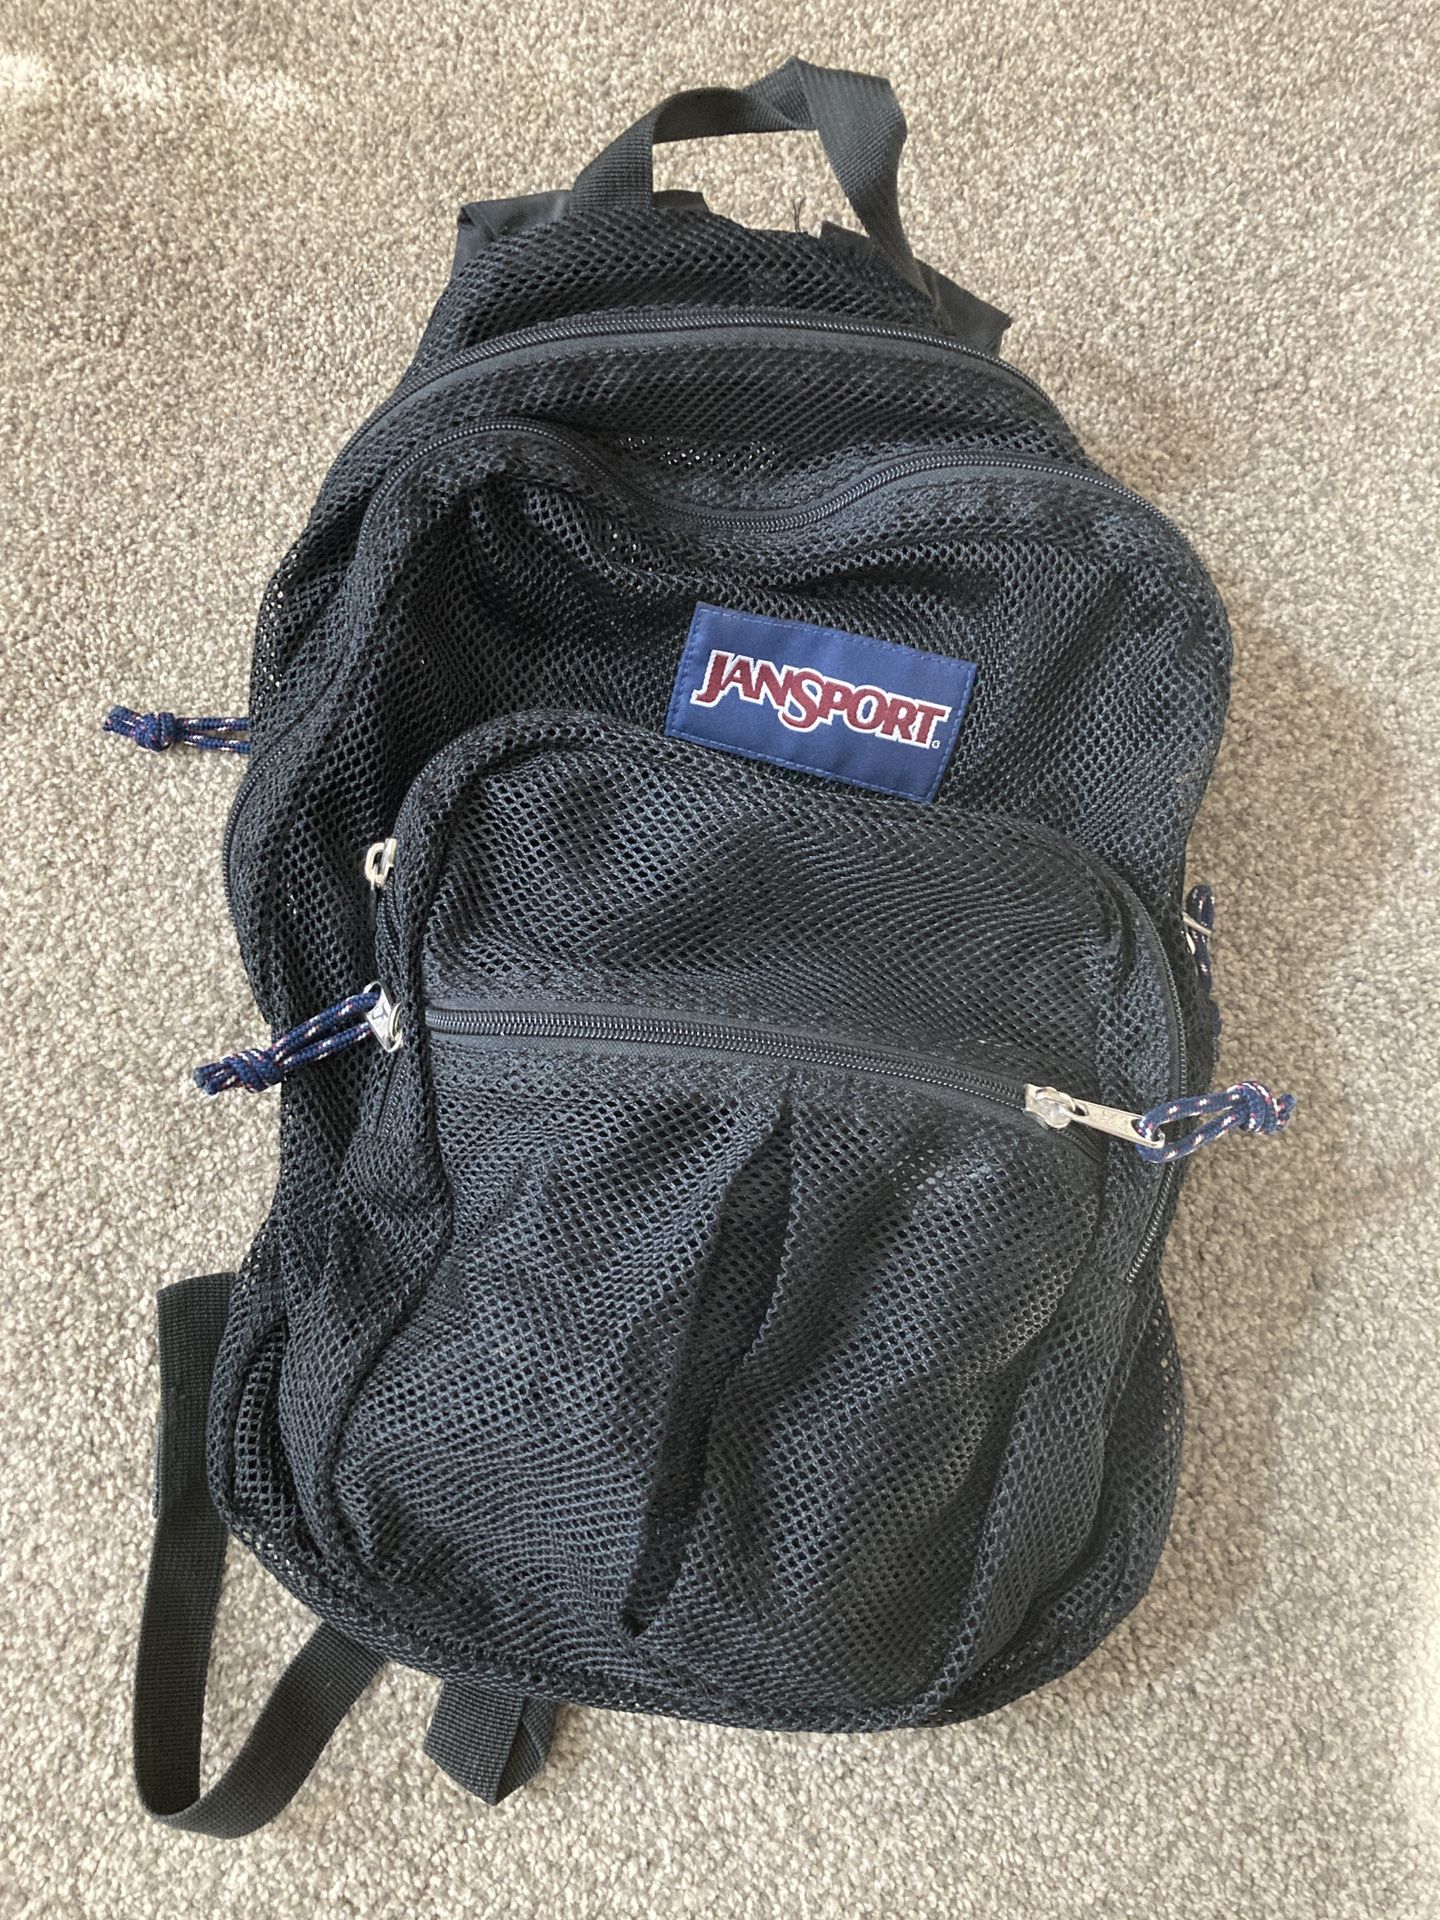 Mesh Jansport Backpack